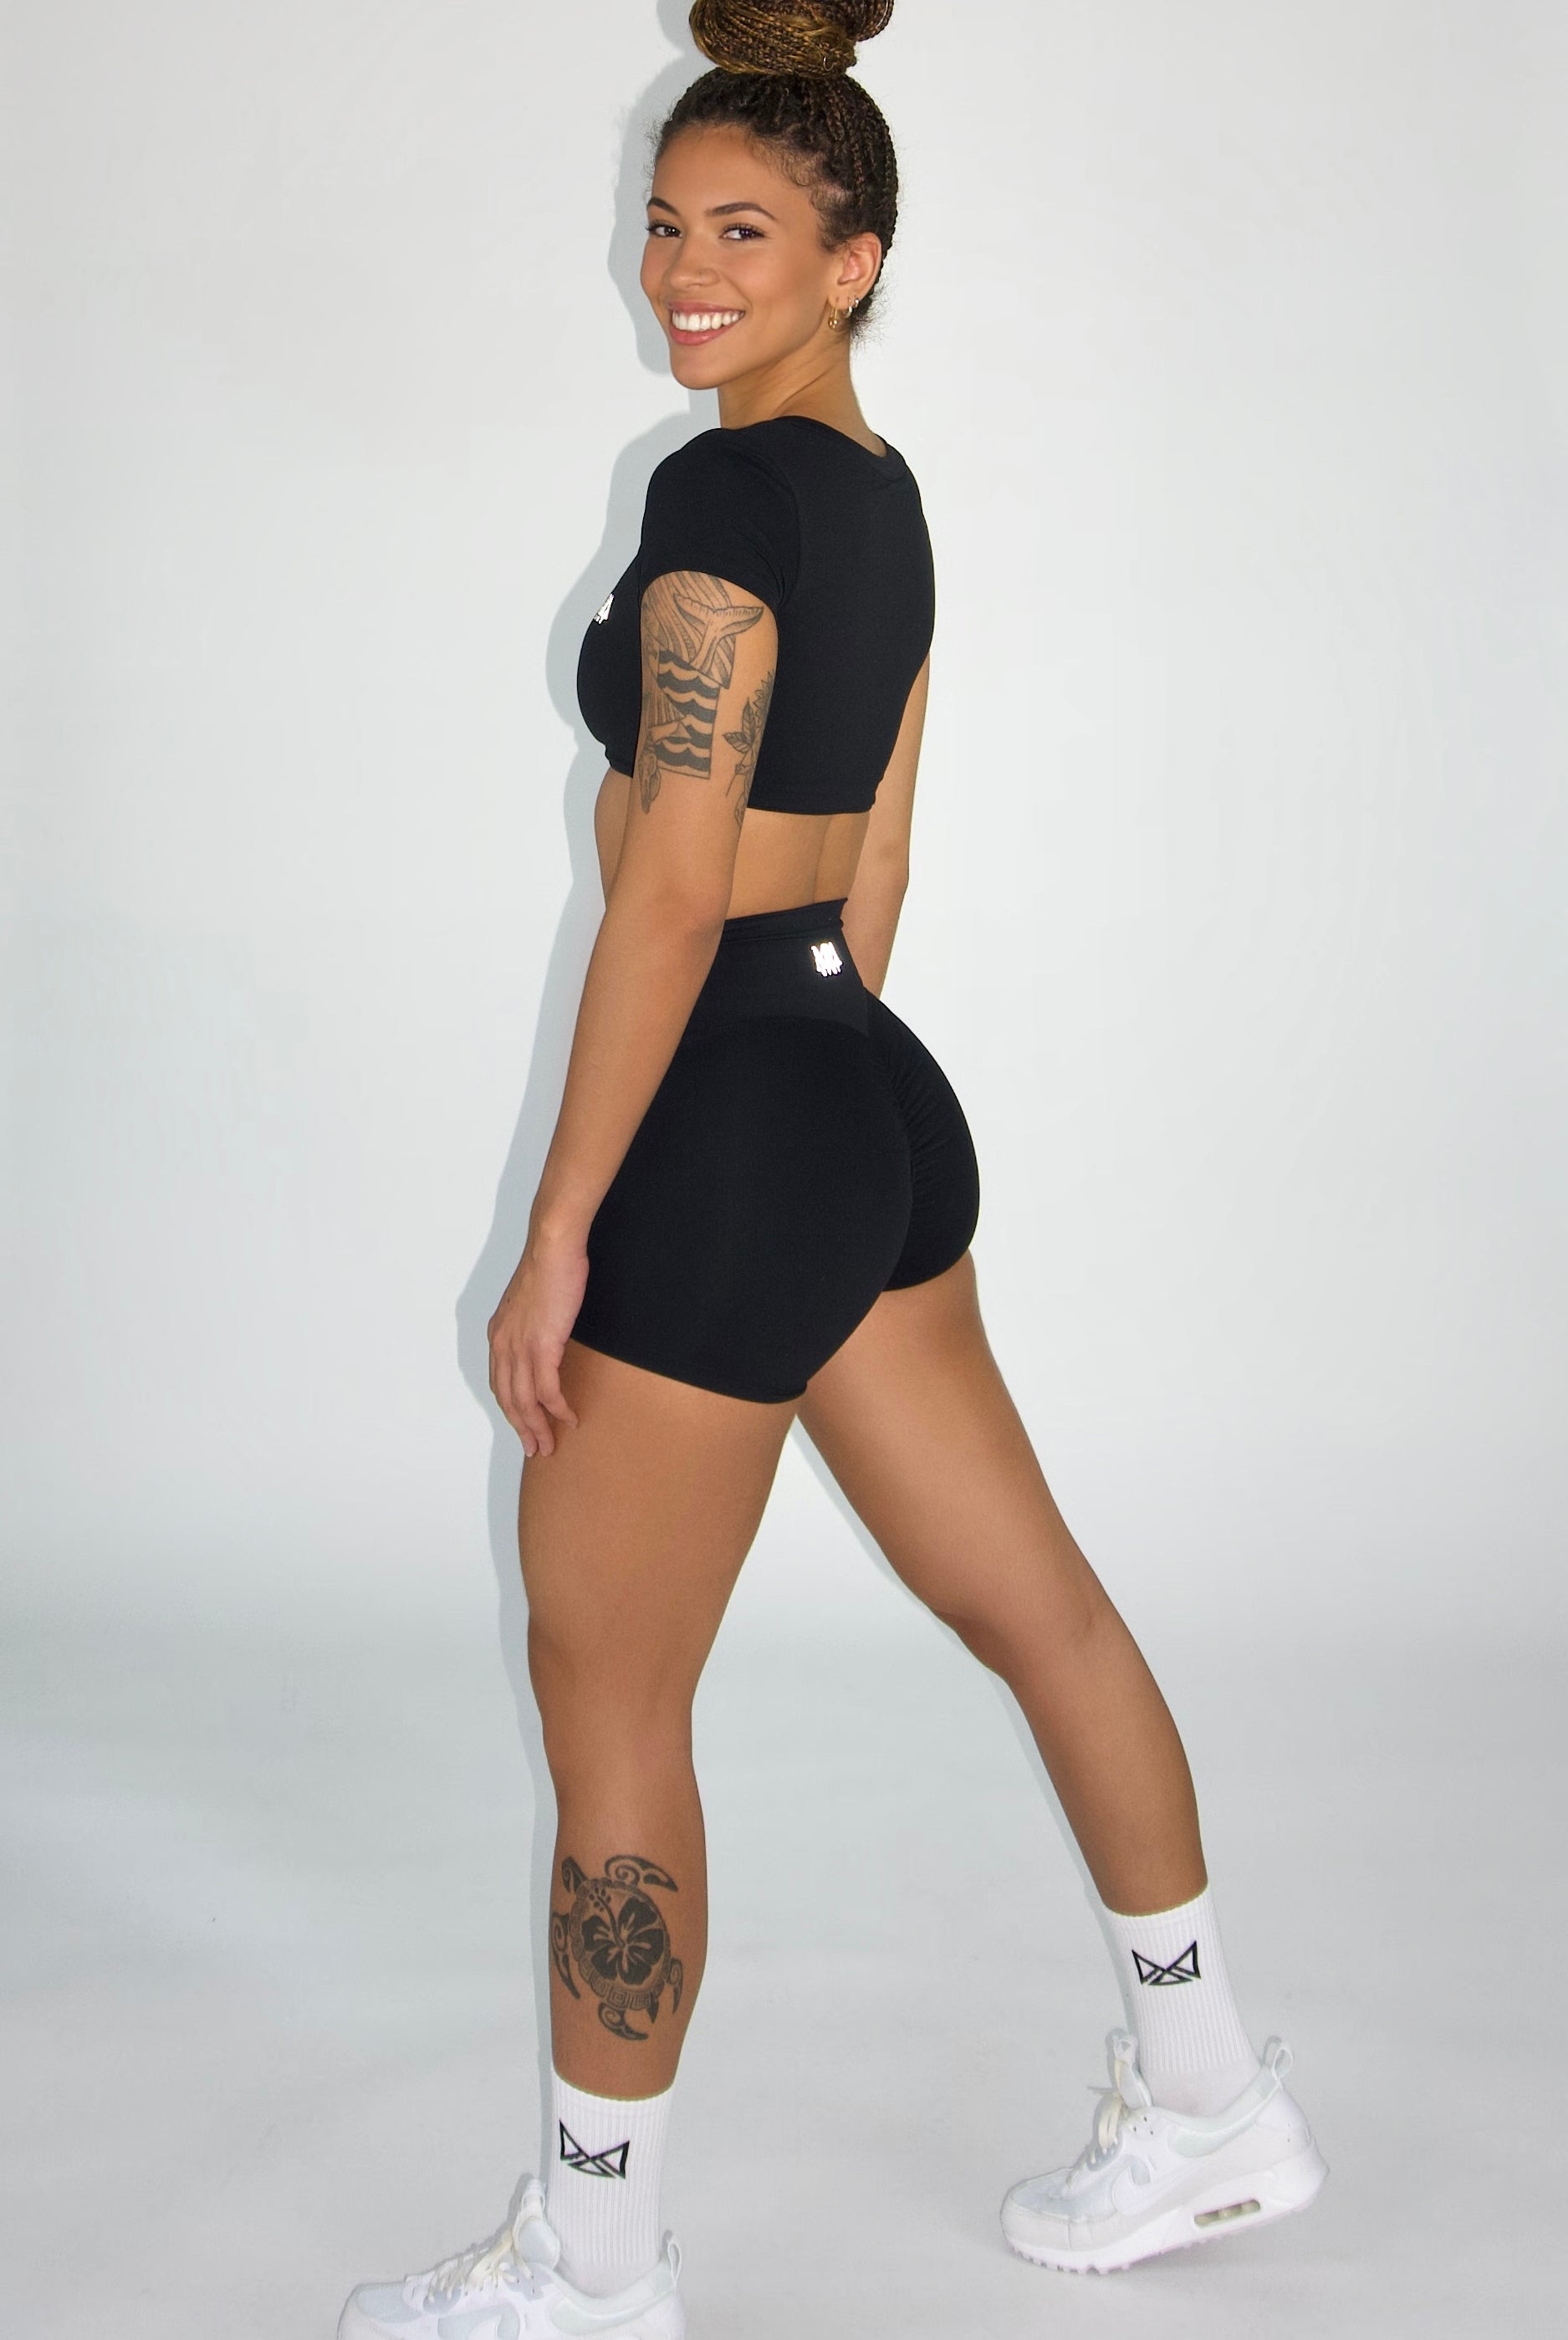 MILA MVMT Sportswear Emmie Short Sleeve Crop Top Sports Bra & Emmie Shorts Leggings Black